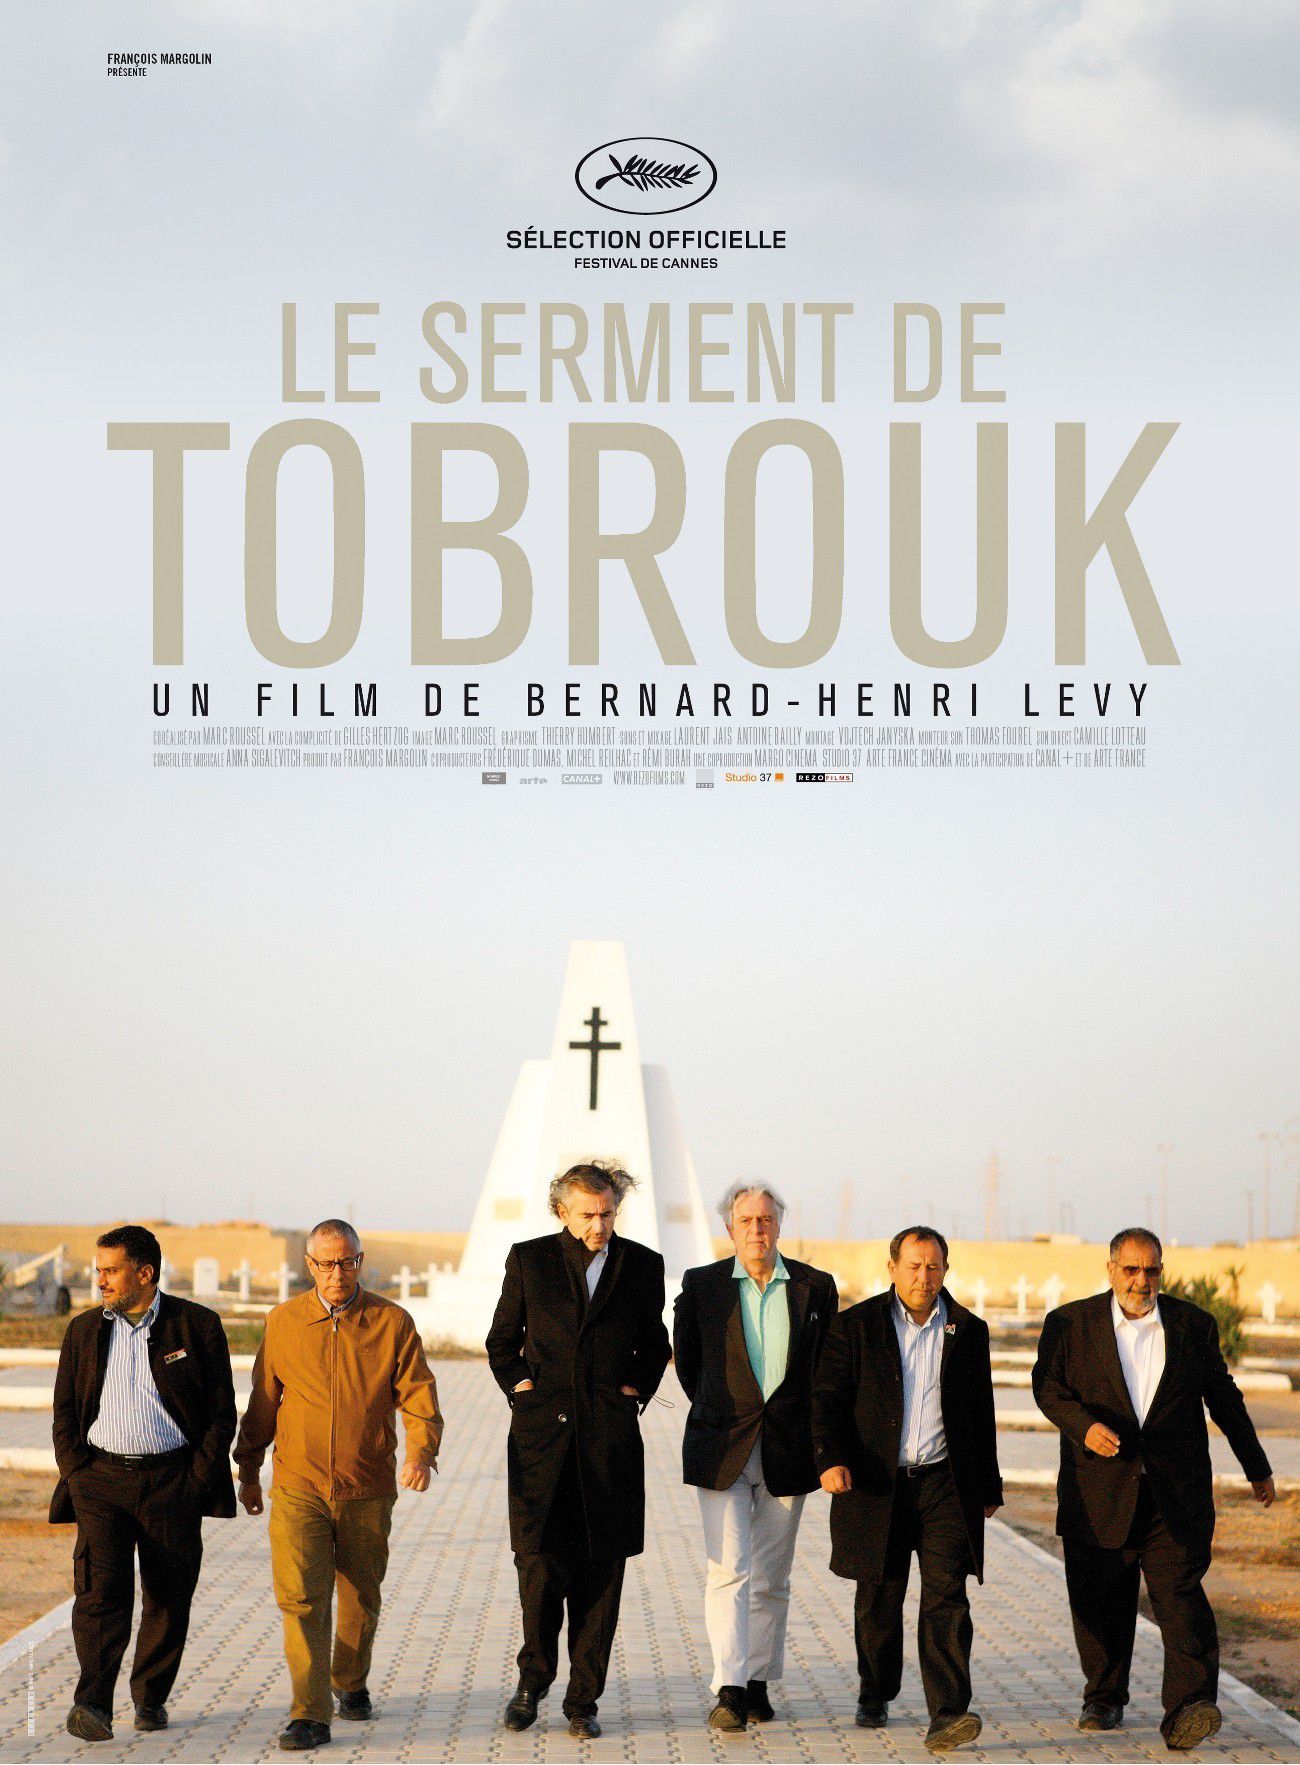 Le Serment de Tobrouk - Documentaire (2012) streaming VF gratuit complet